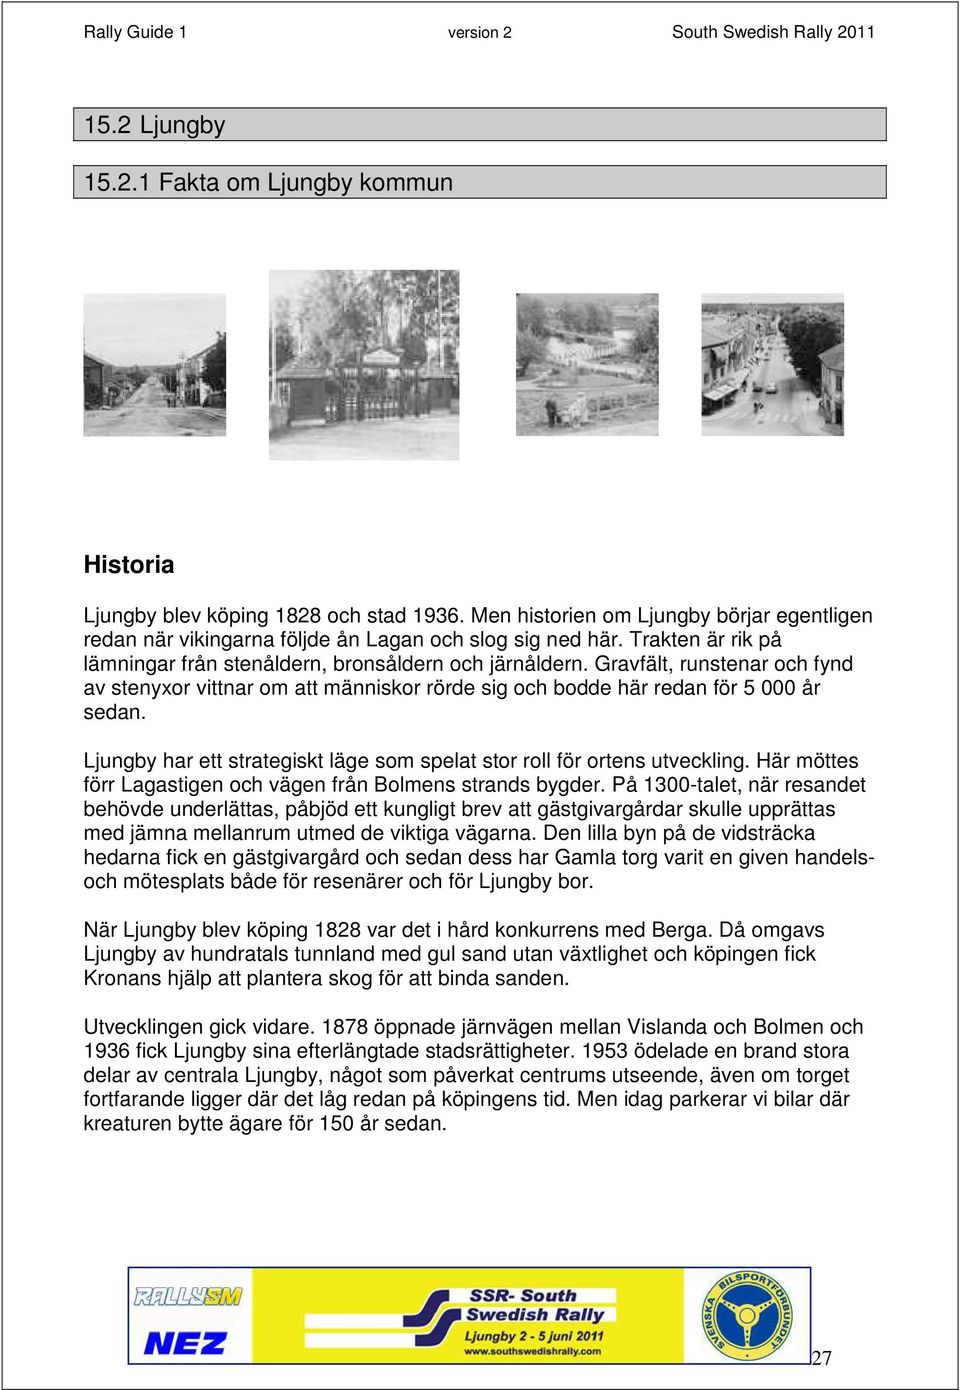 Ljungby har ett strategiskt läge som spelat stor roll för ortens utveckling. Här möttes förr Lagastigen och vägen från Bolmens strands bygder.